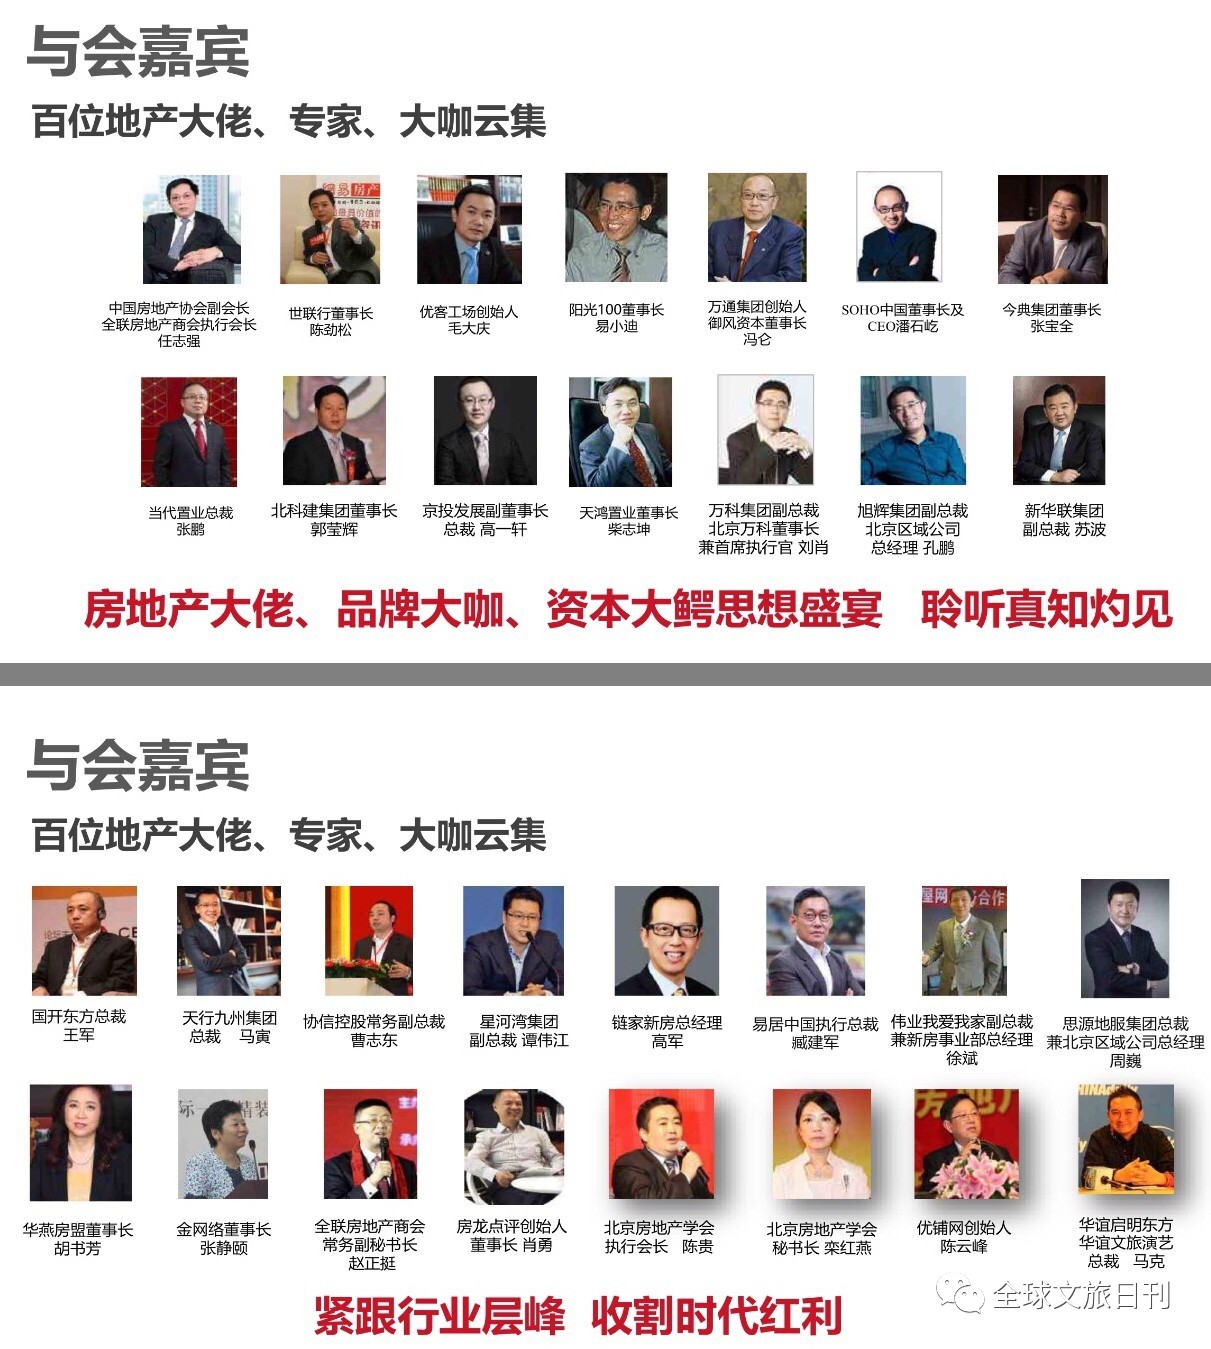 2017-2018 第九届中国房地产领袖年会暨中国特色小镇联盟大会